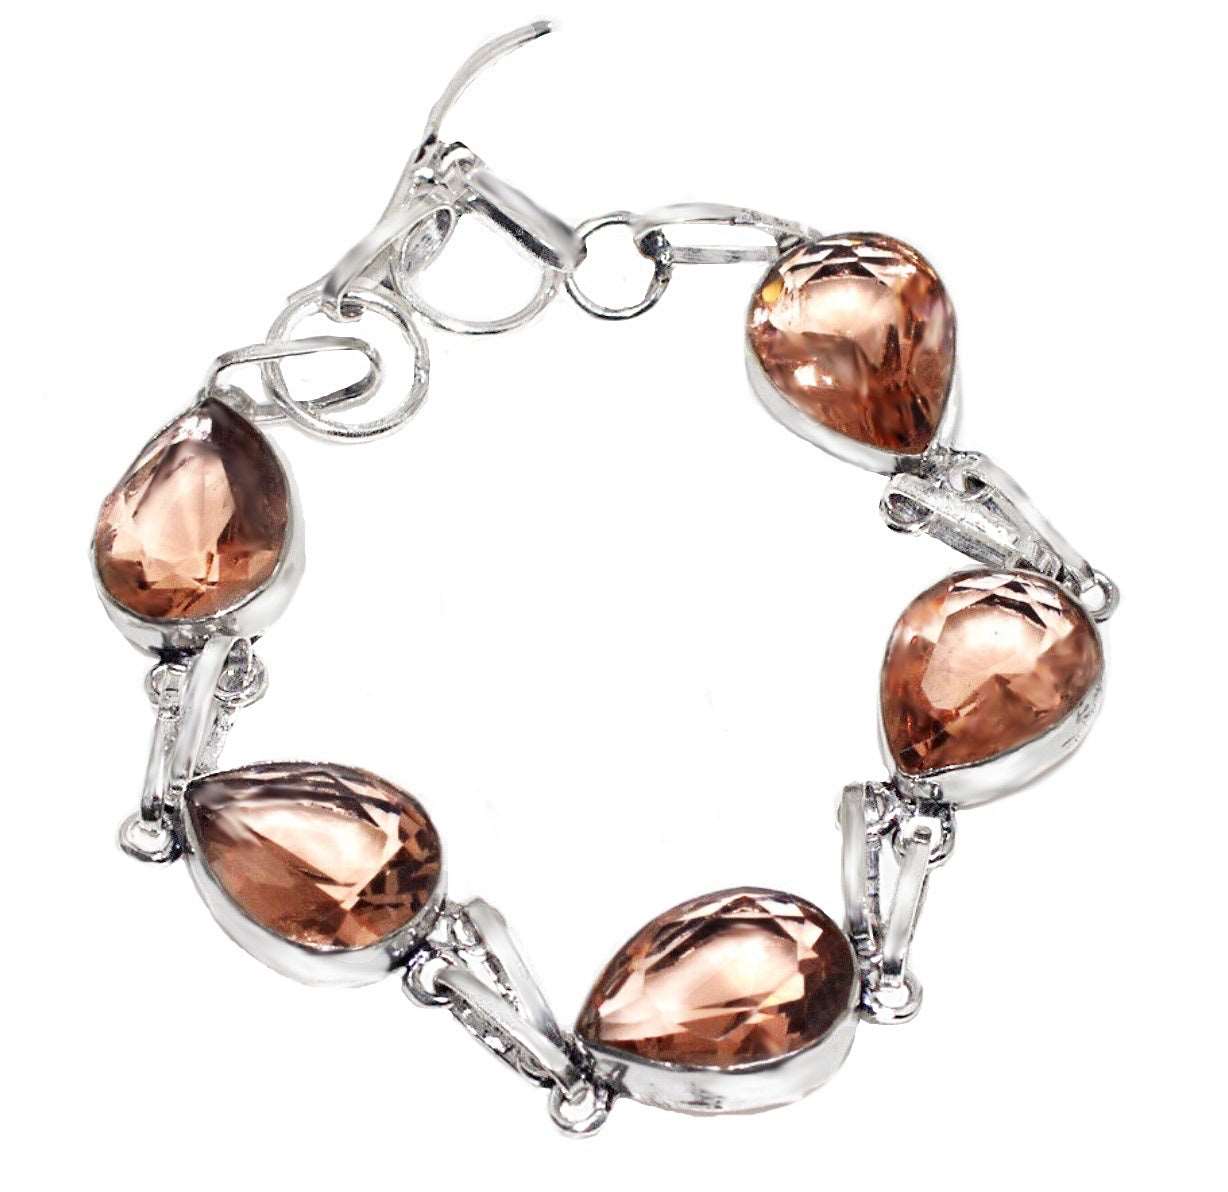 Faceted Morganite Pears Gemstone Set in .925 Silver Bracelet - BELLADONNA